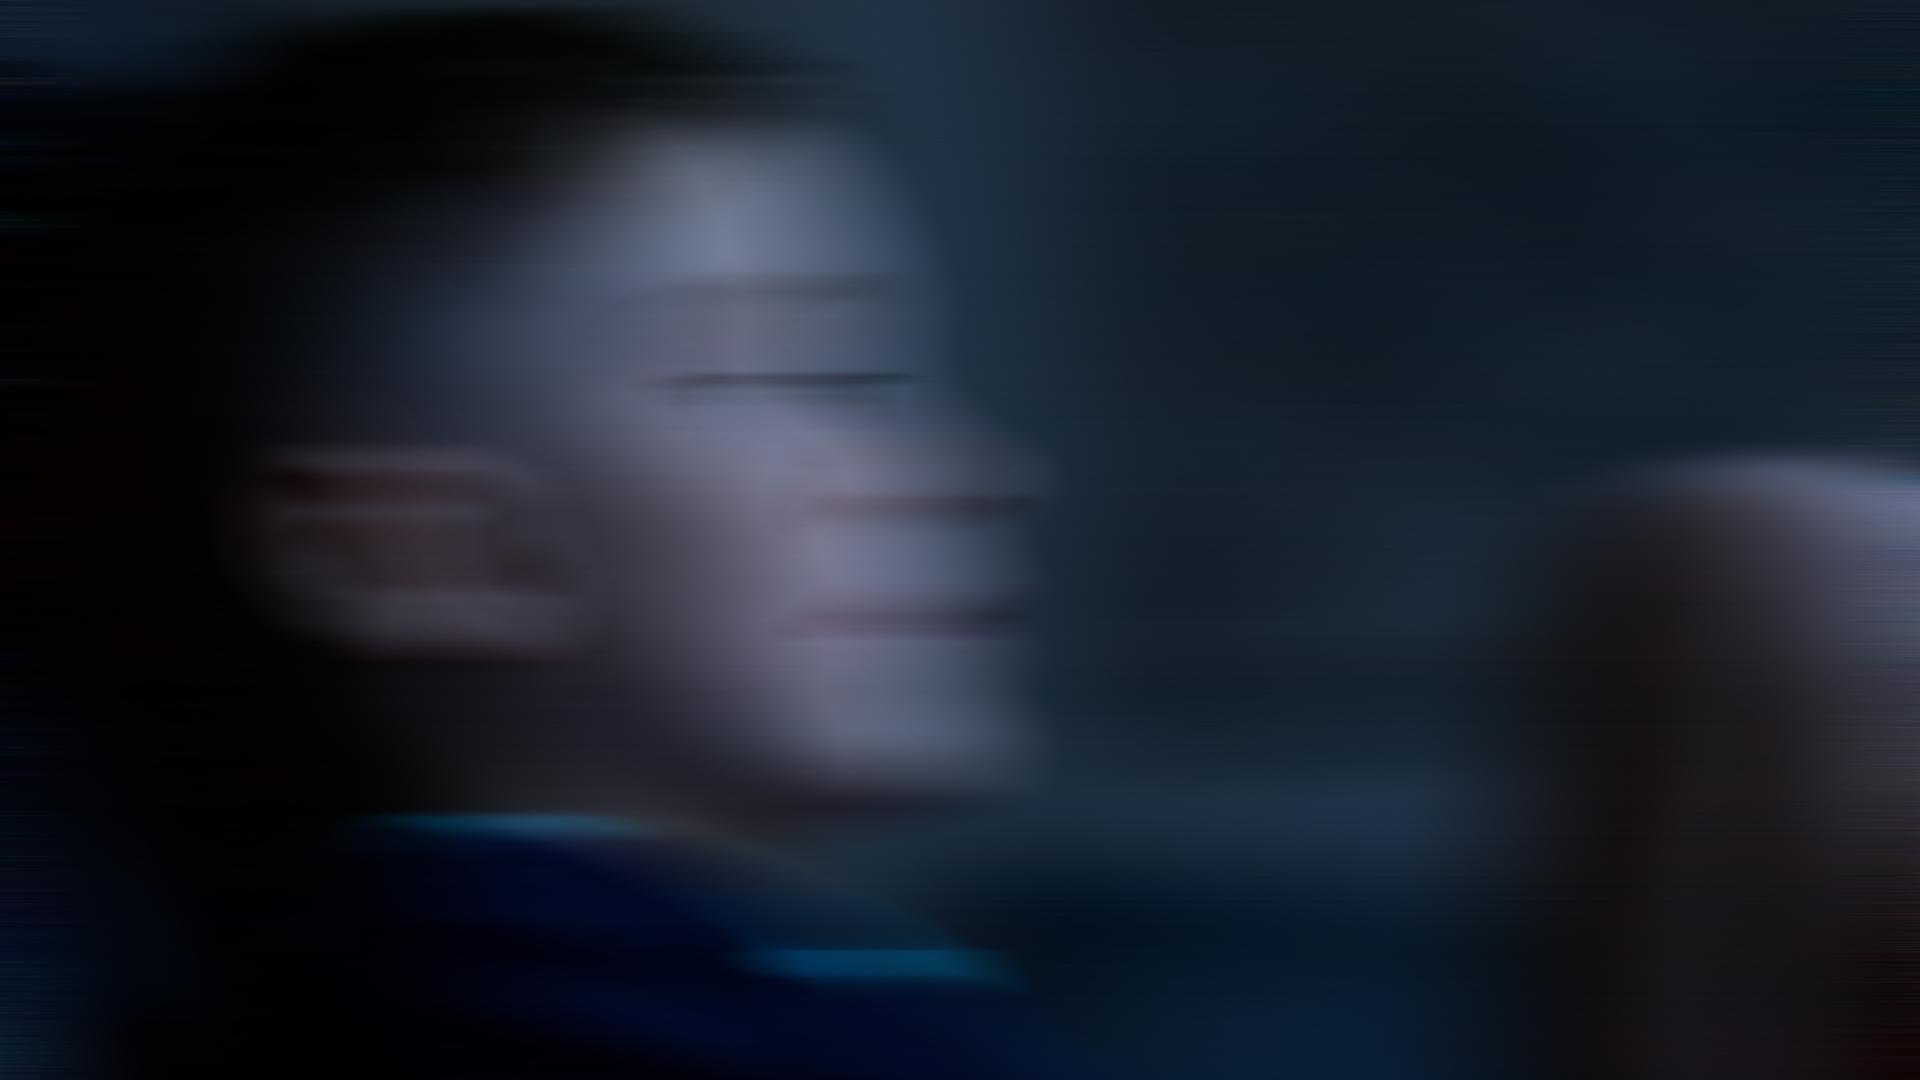 Ein Junge vor dunklem Hintergrund. Das Bild ist mit Bewegungsunschärfe verfremdet.